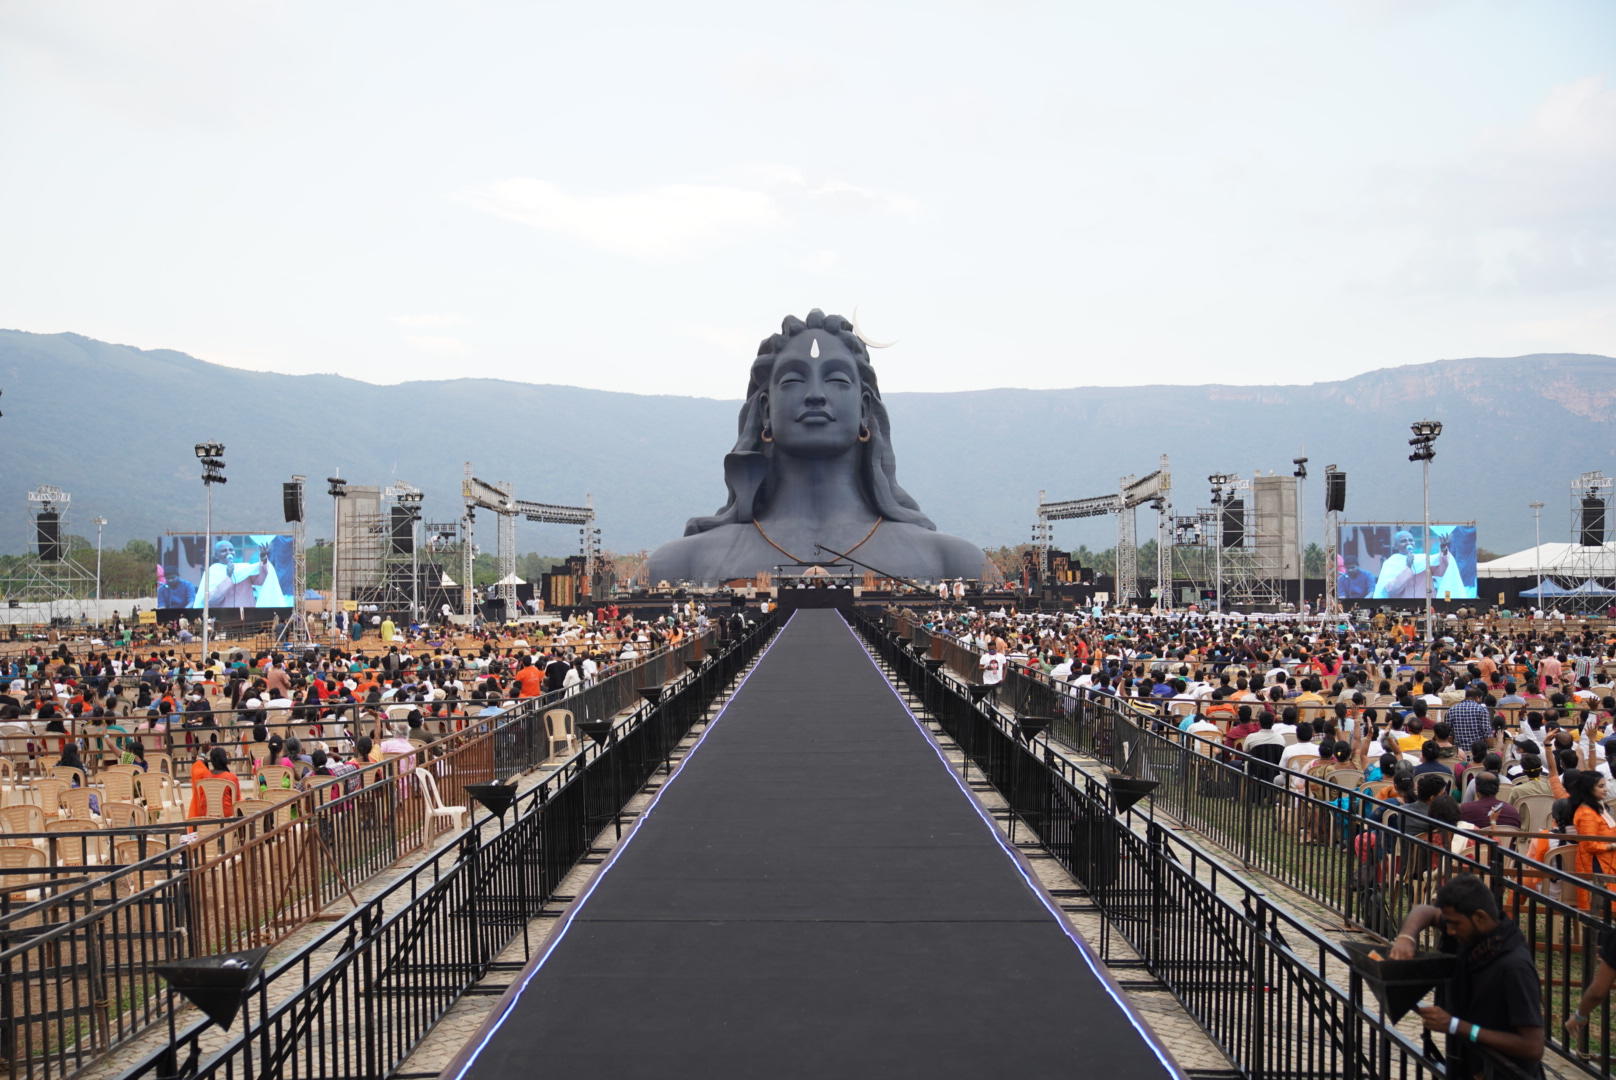 Maha Shivaratri celeberation starts today in india 